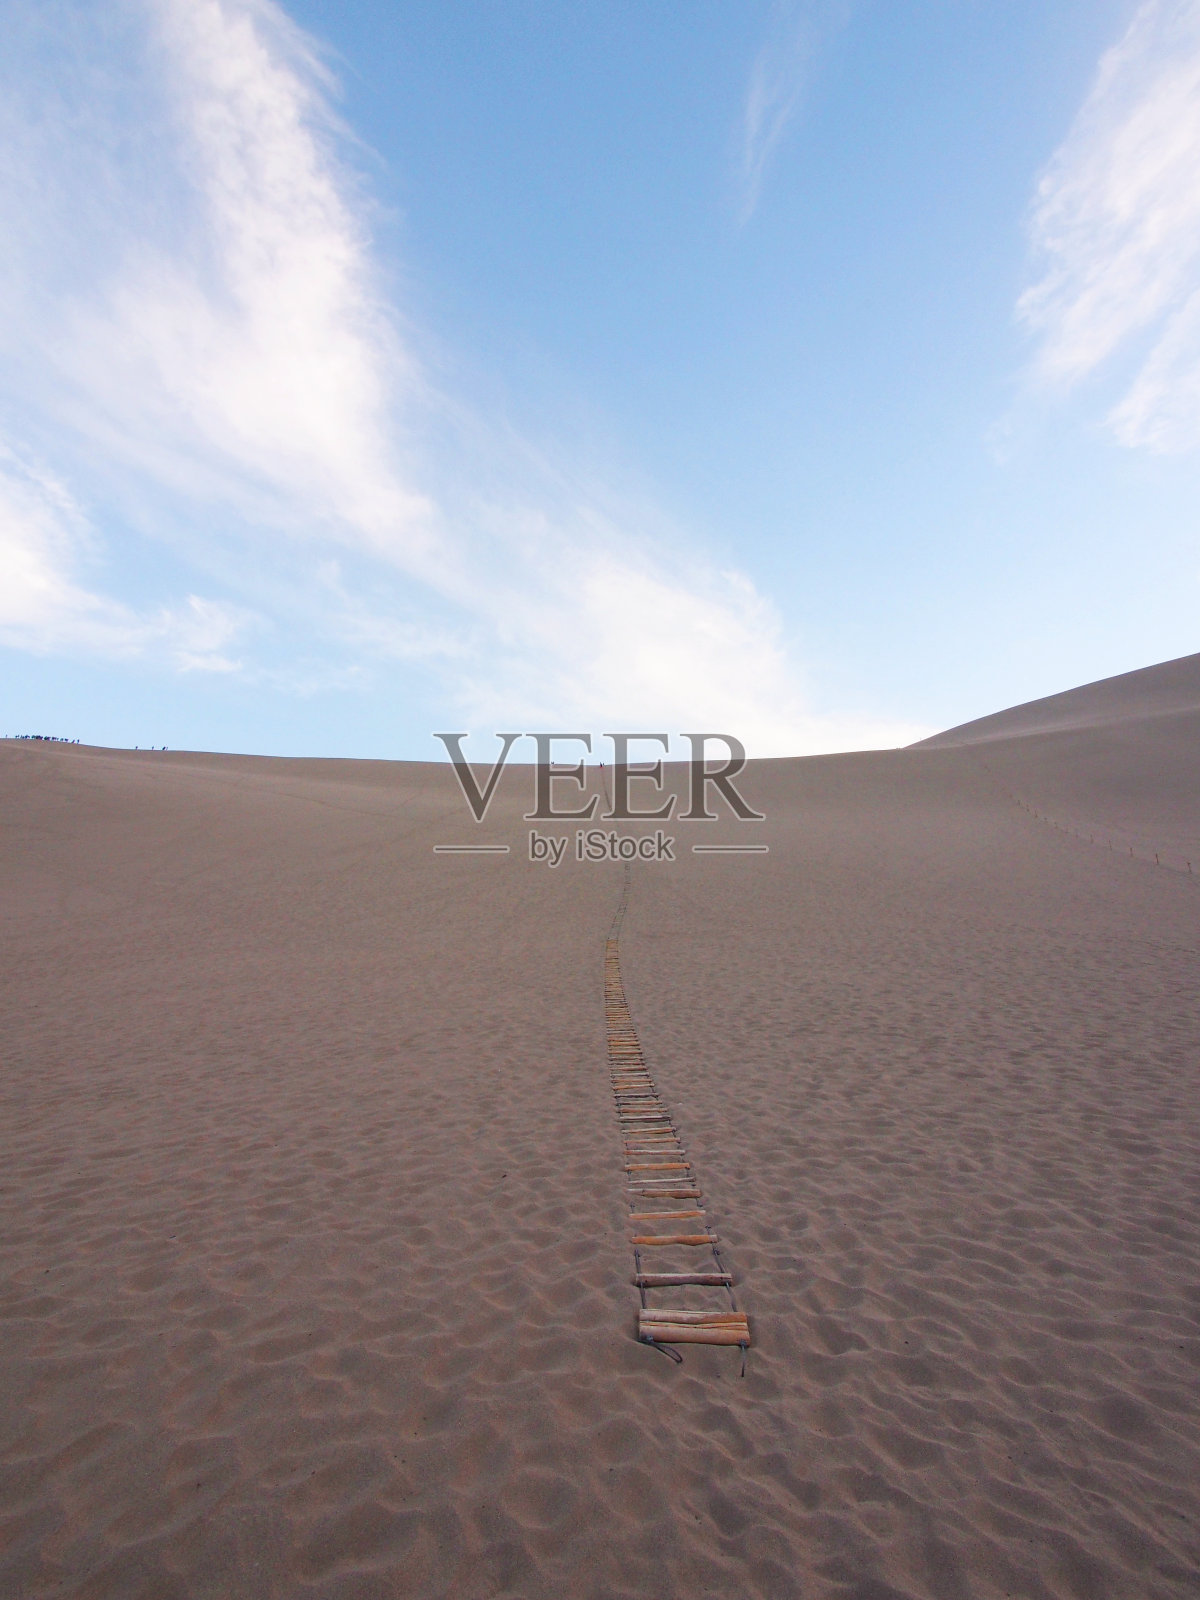 敦煌沙漠丝绸之路的一部分。在中国甘肃敦煌旅游。2013年10月14日照片摄影图片